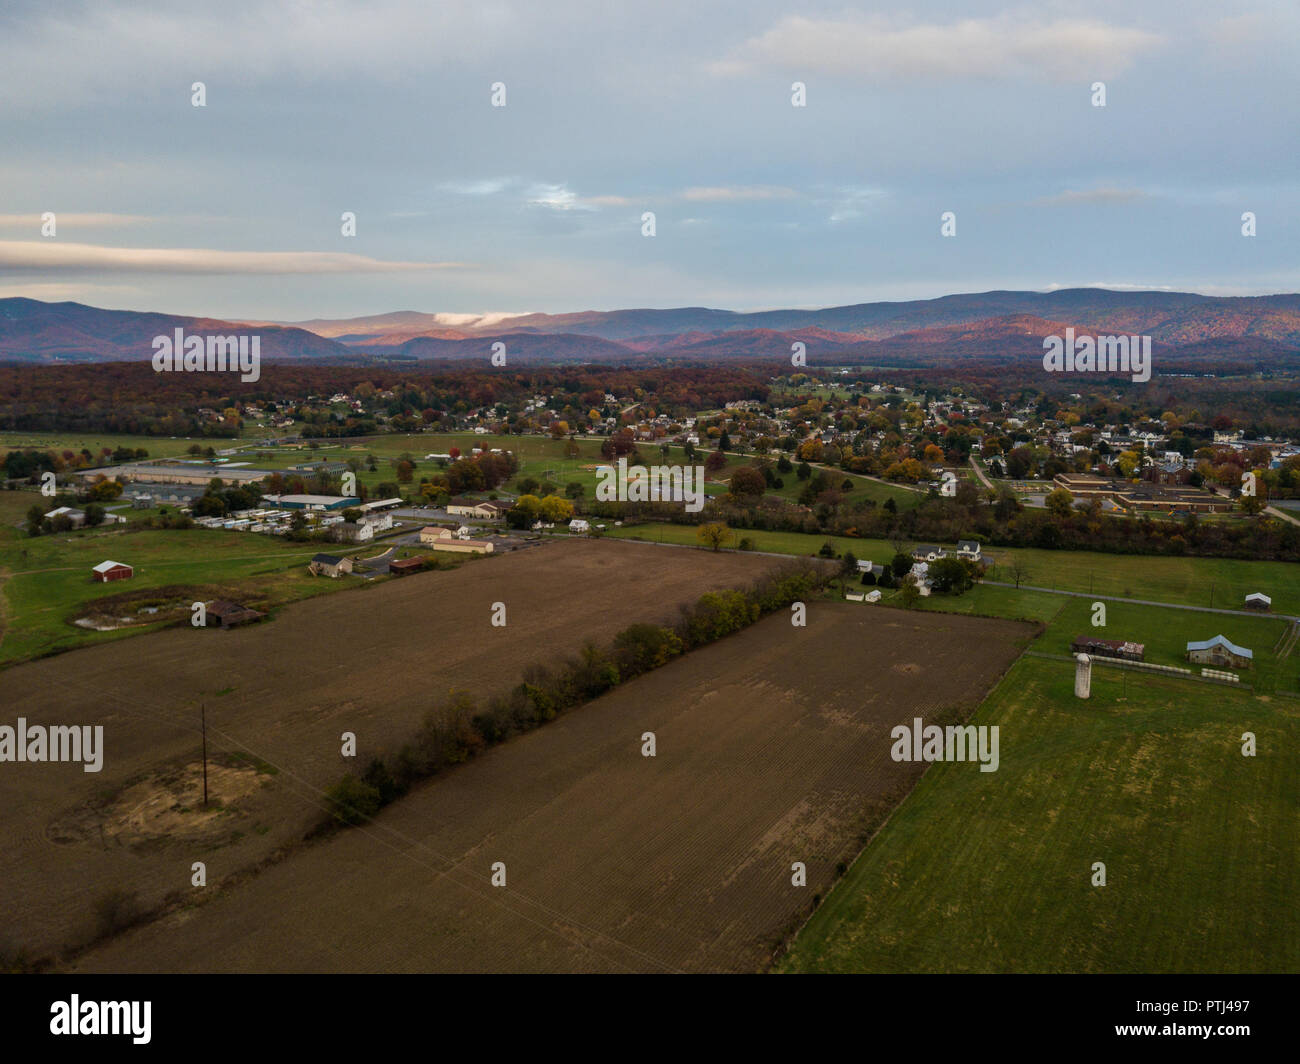 Vue aérienne de la petite ville de Elkton, dans la vallée de Shenandoah en Virginie avec des montagnes au loin Banque D'Images